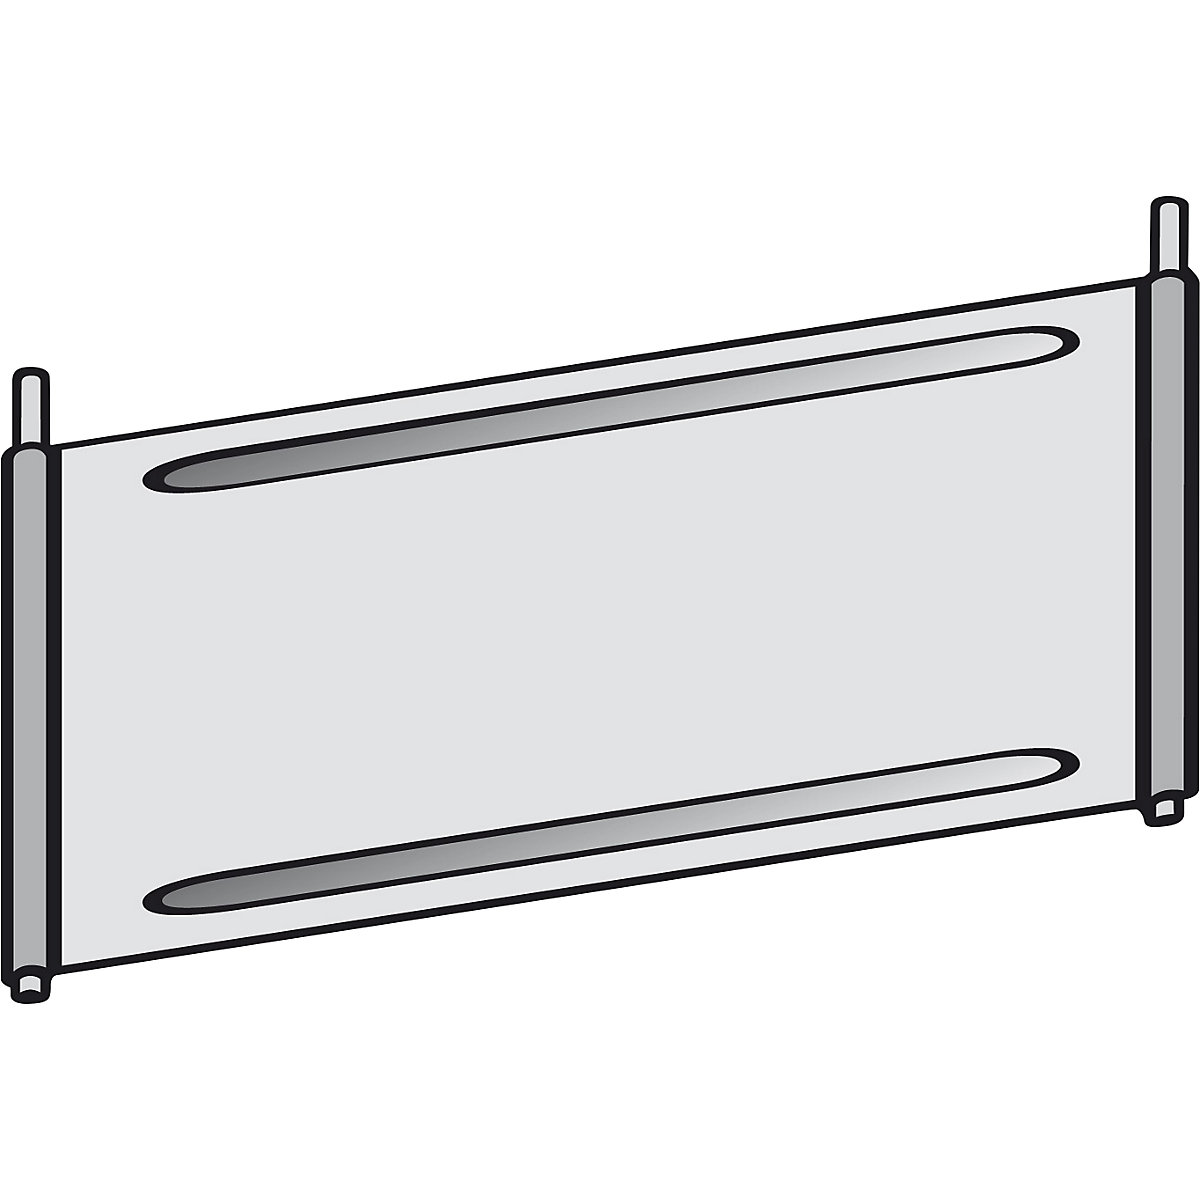 Chapa separadora para estantería de compartimentos - hofe